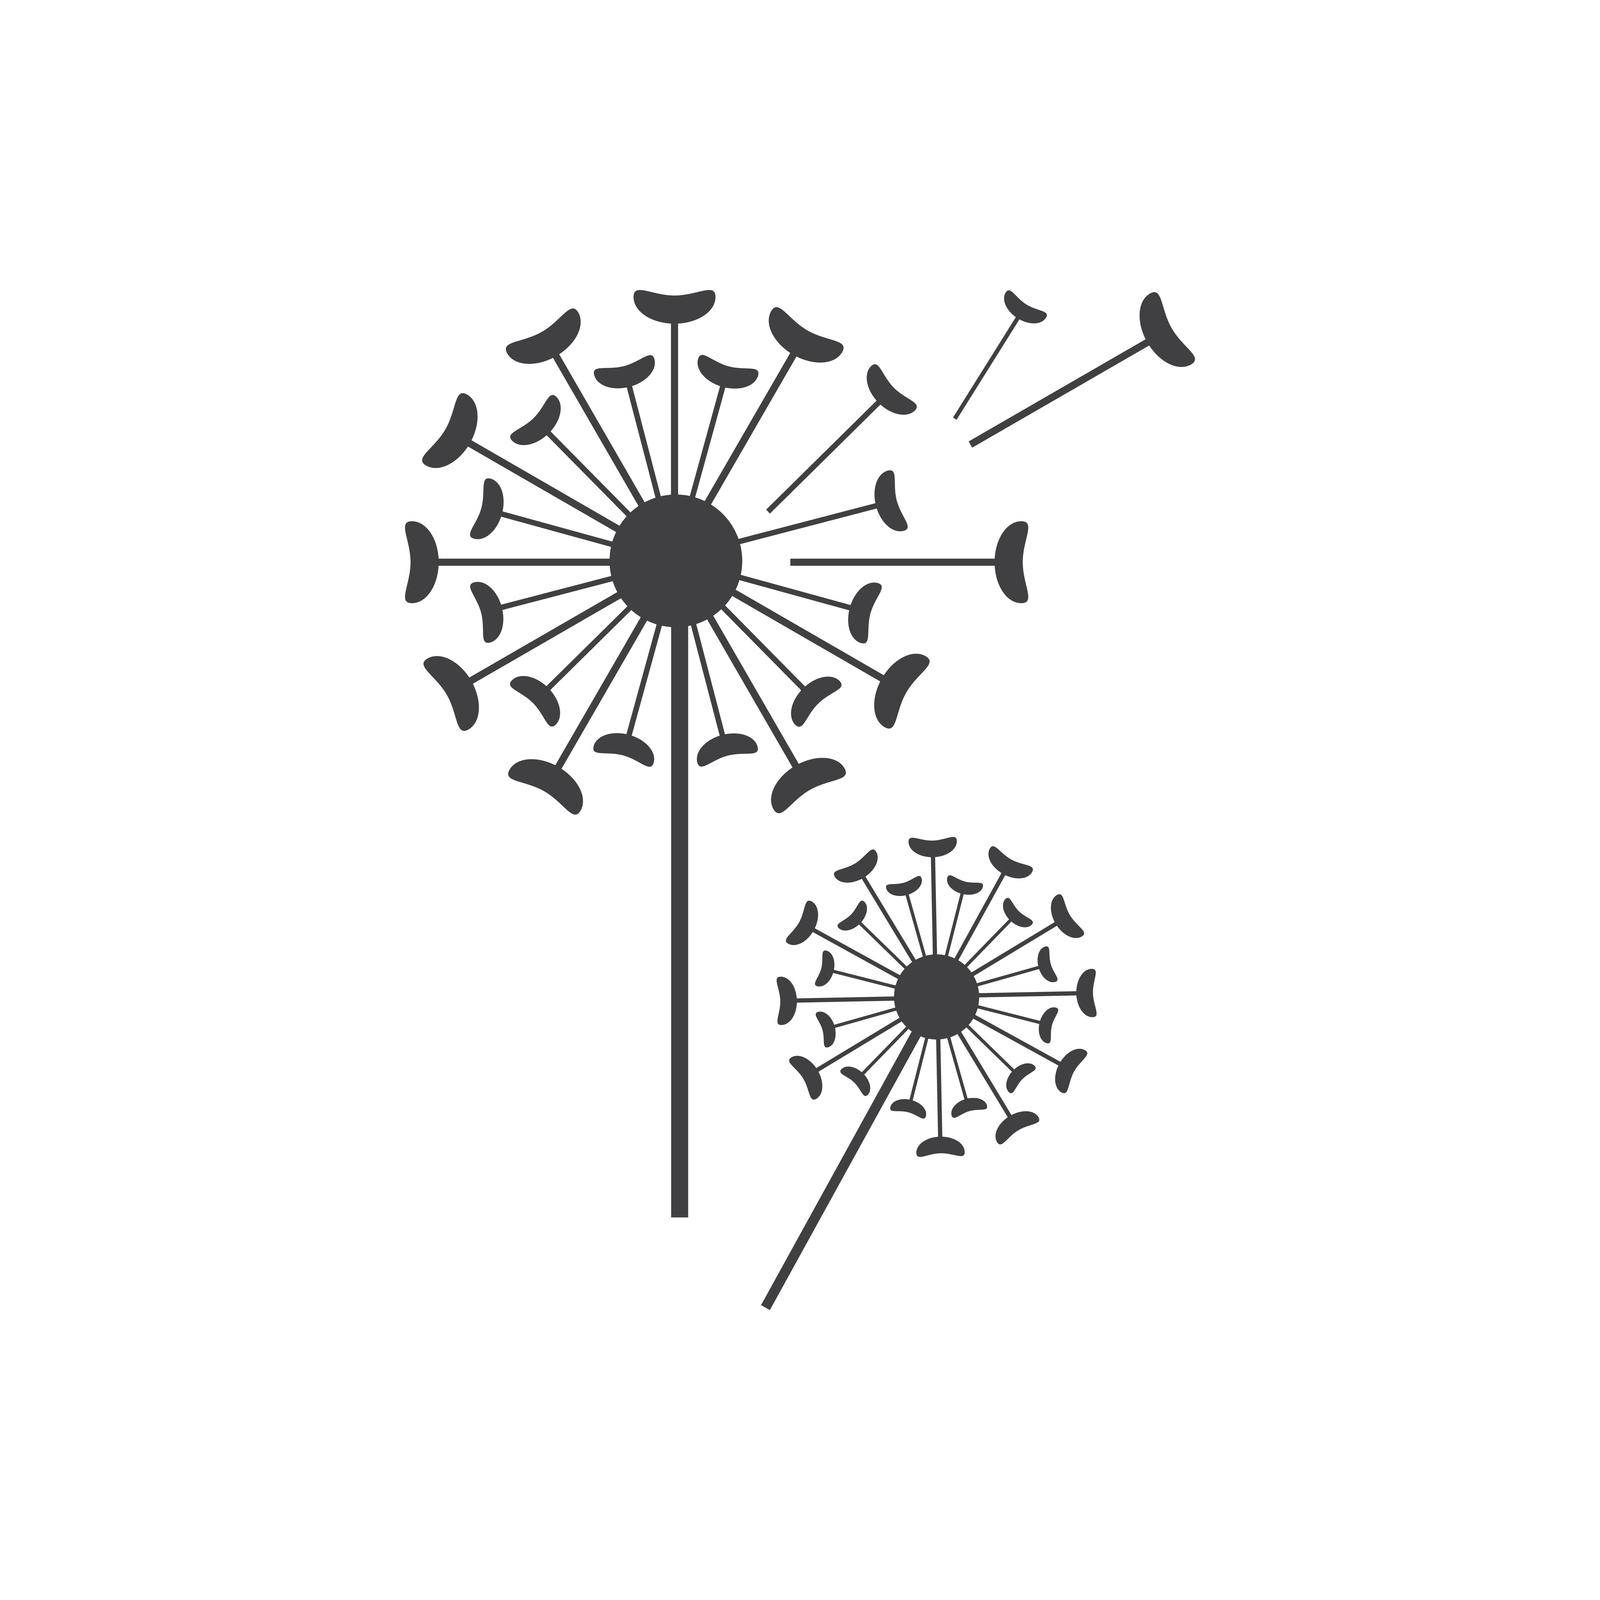 Dandelion logo images illustration design